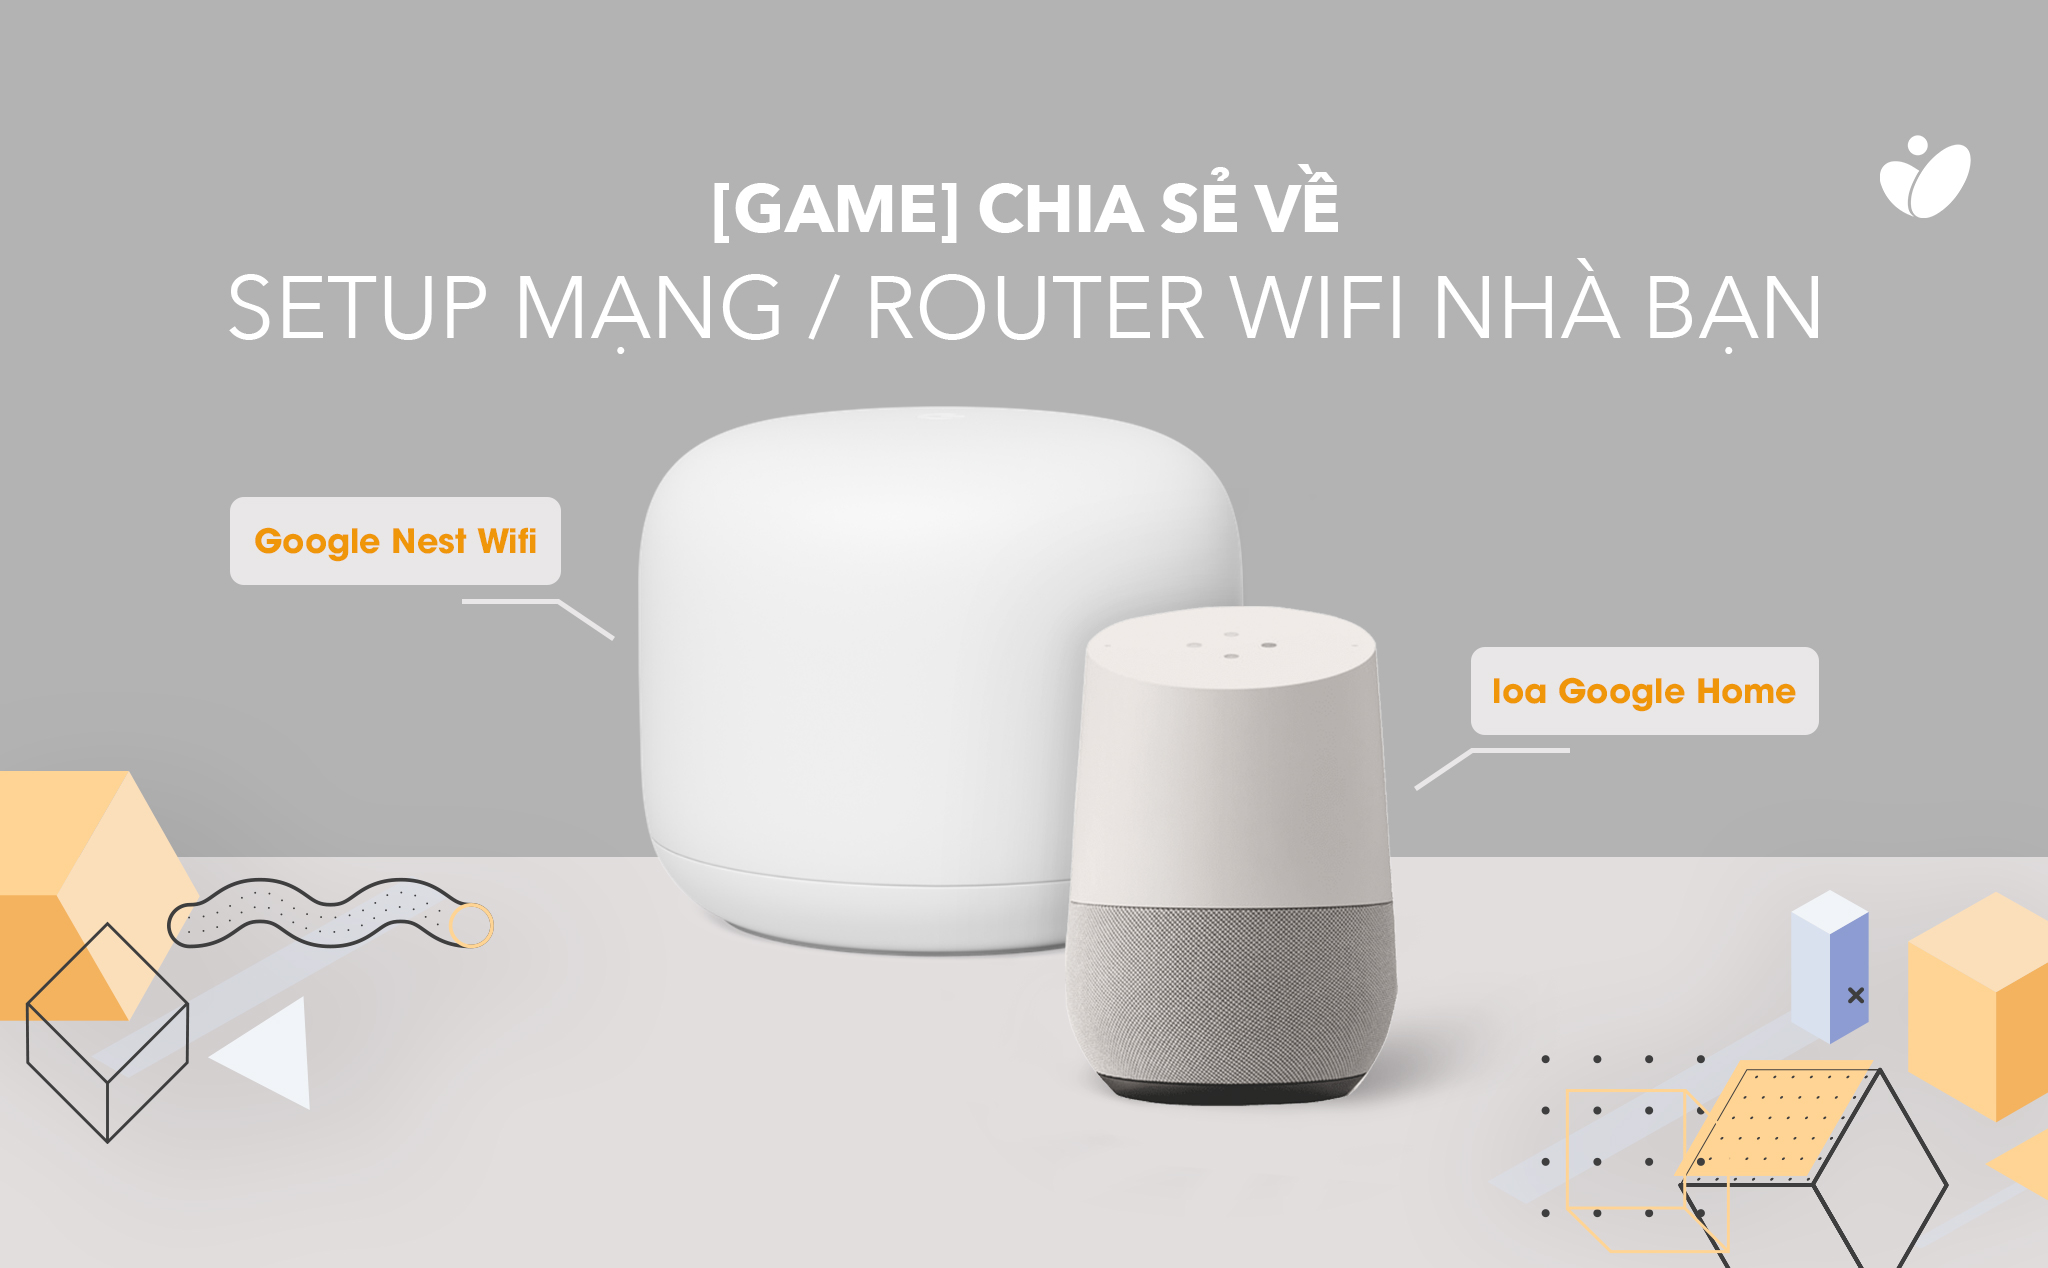 [Game] Thi chia sẻ về setup mạng/ router Wifi nhà bạn, trúng Google Nest Wifi & loa Google Home